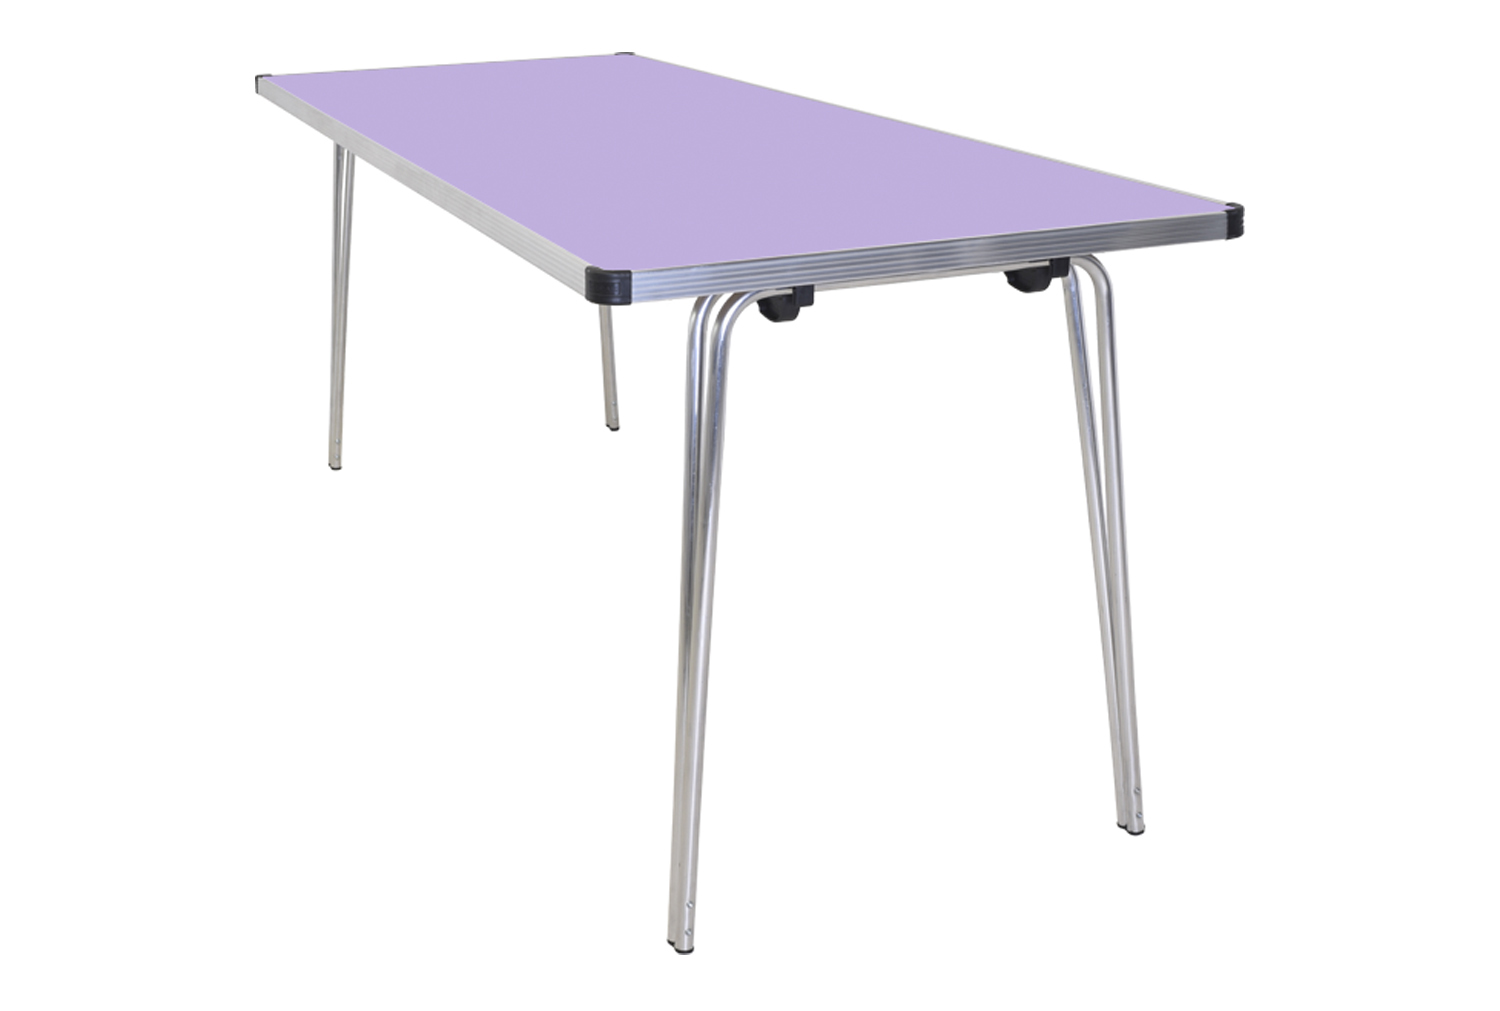 Gopak Contour Plus Folding Table, 183wx76d (cm), Lilac